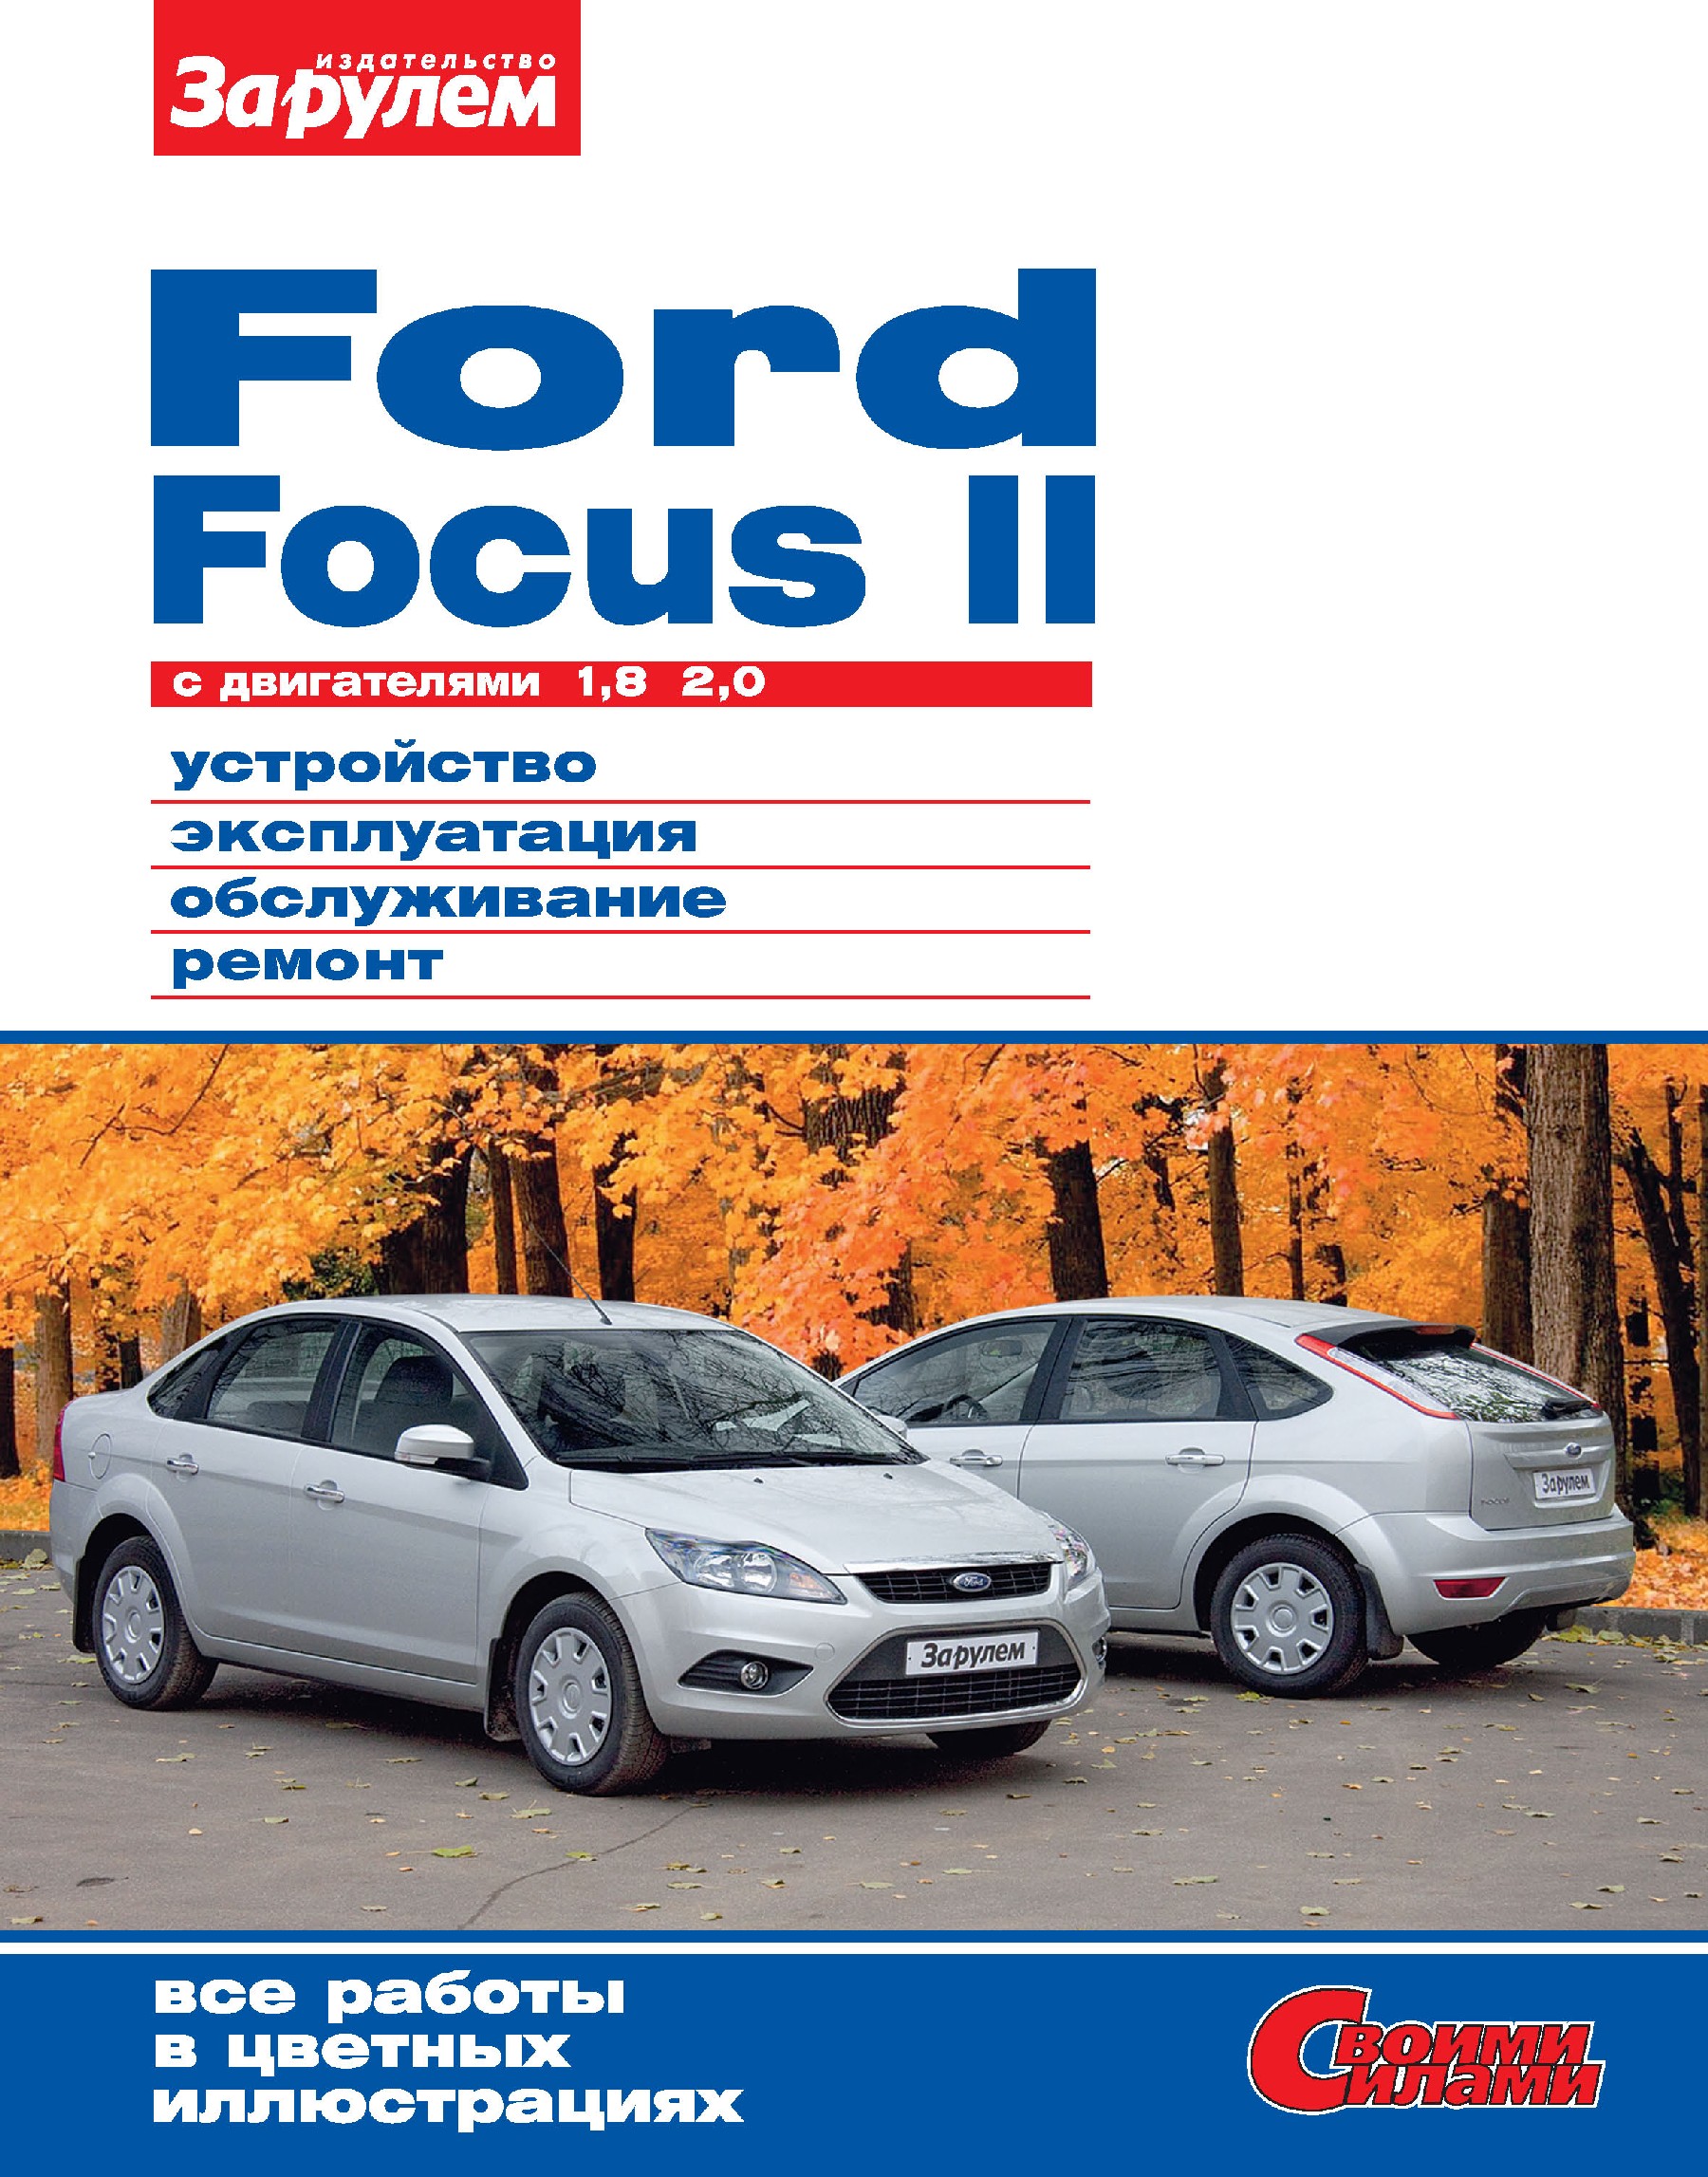 Ford Focus II cдвигателями 1,8; 2,0. Устройство, эксплуатация, обслуживание, ремонт. Иллюстрированное руководство.